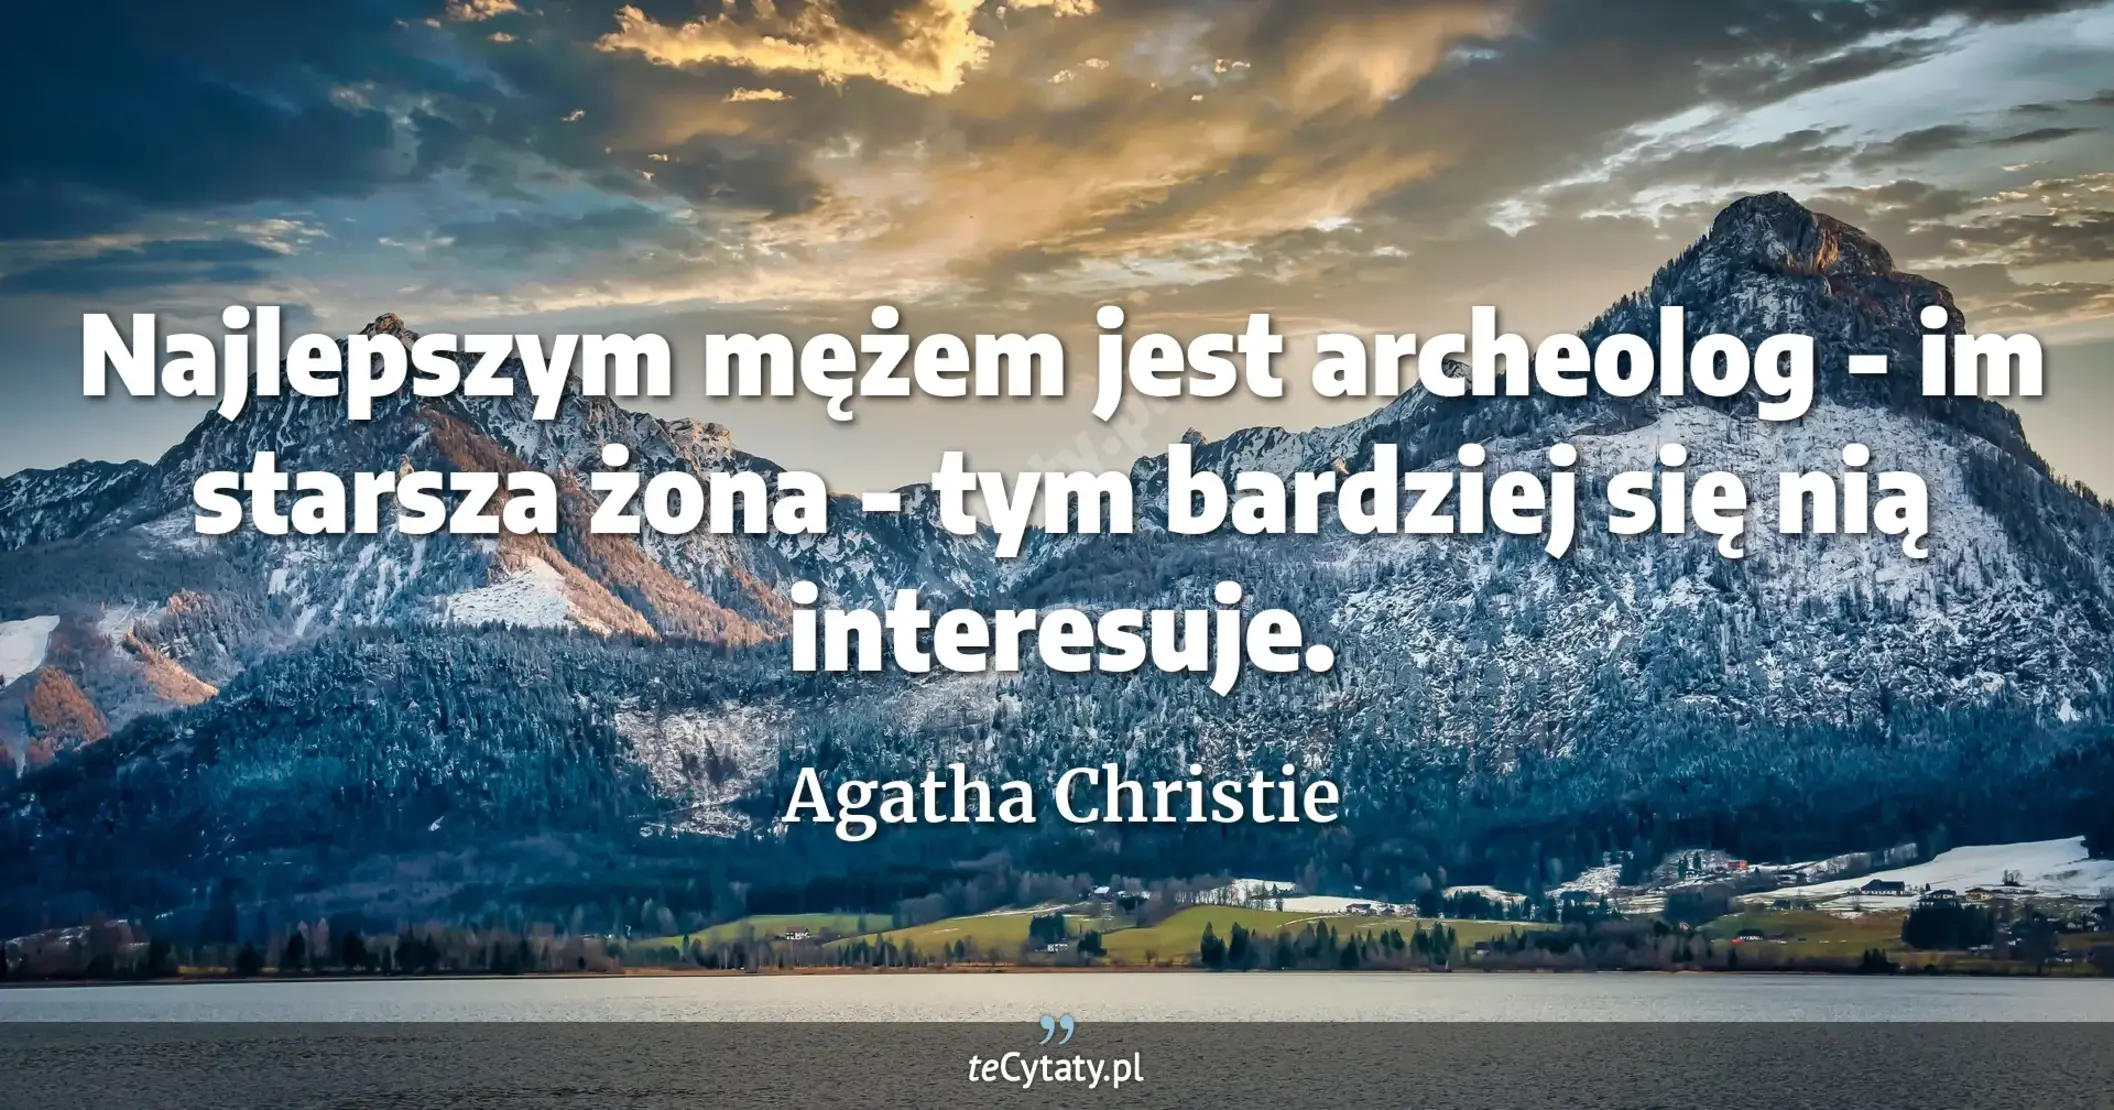 Najlepszym mężem jest archeolog - im starsza żona - tym bardziej się nią interesuje. - Agatha Christie